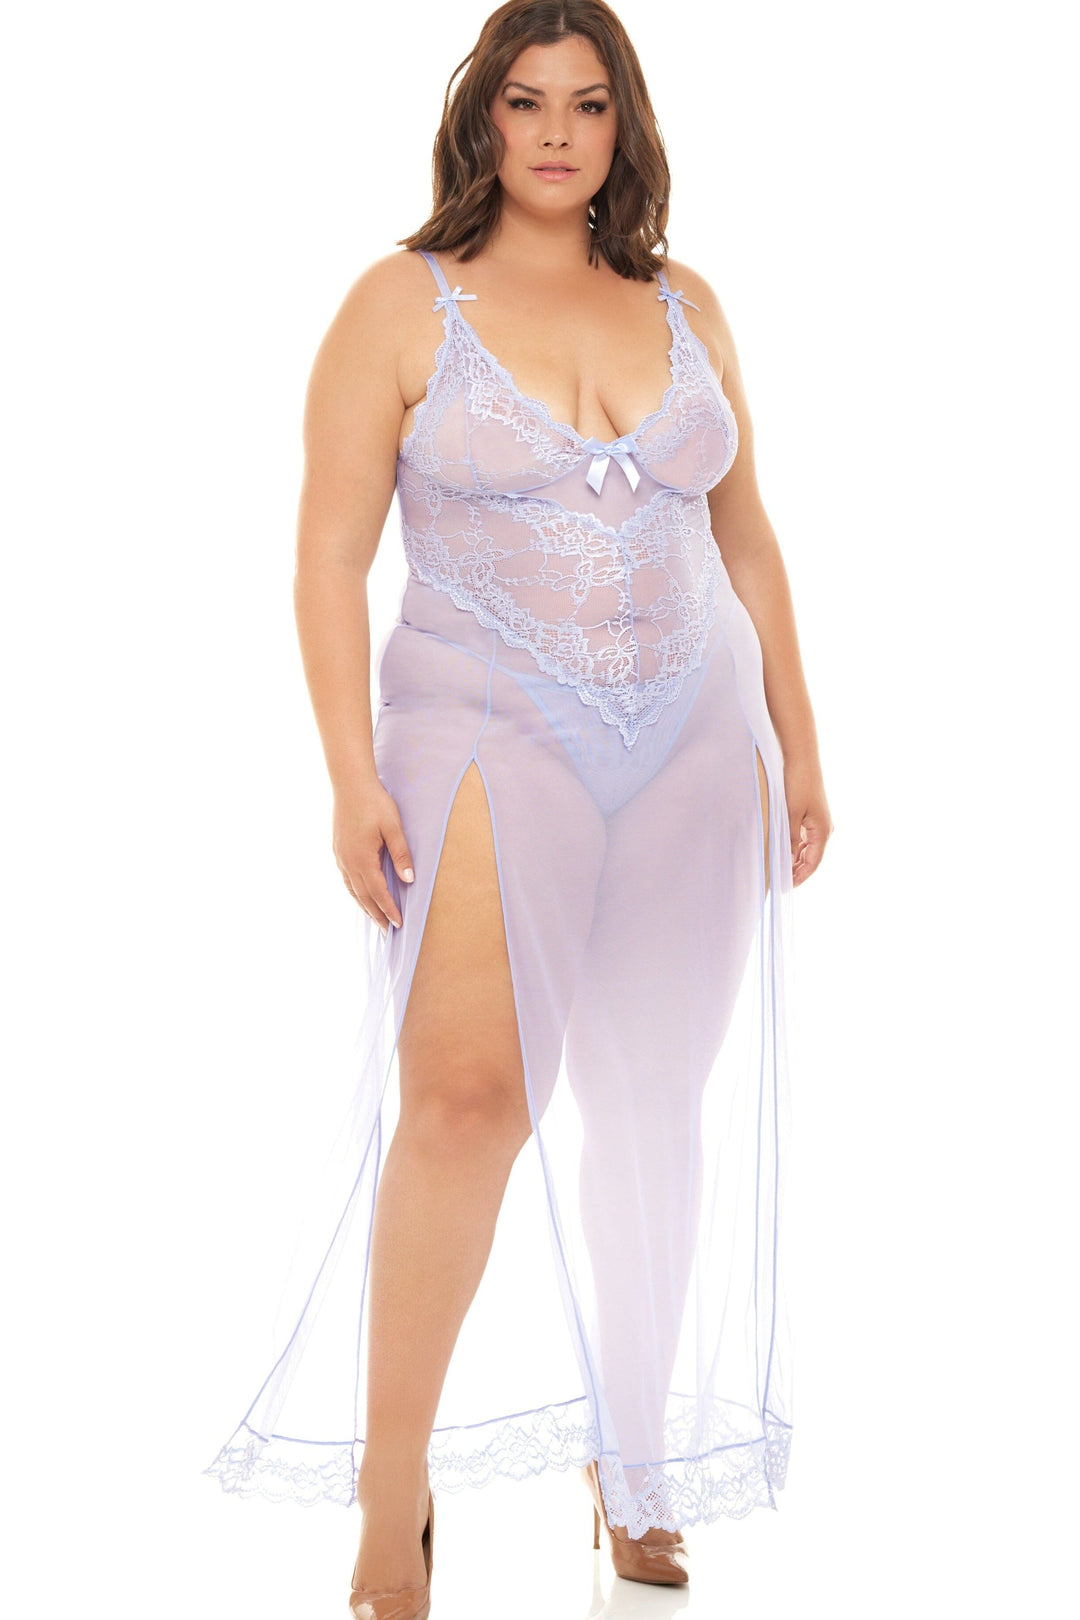 Soft Cup Gown With Lace Detail + G-String-Babydolls-Oh La La Cheri-Blue-2XL-SEXYSHOES.COM